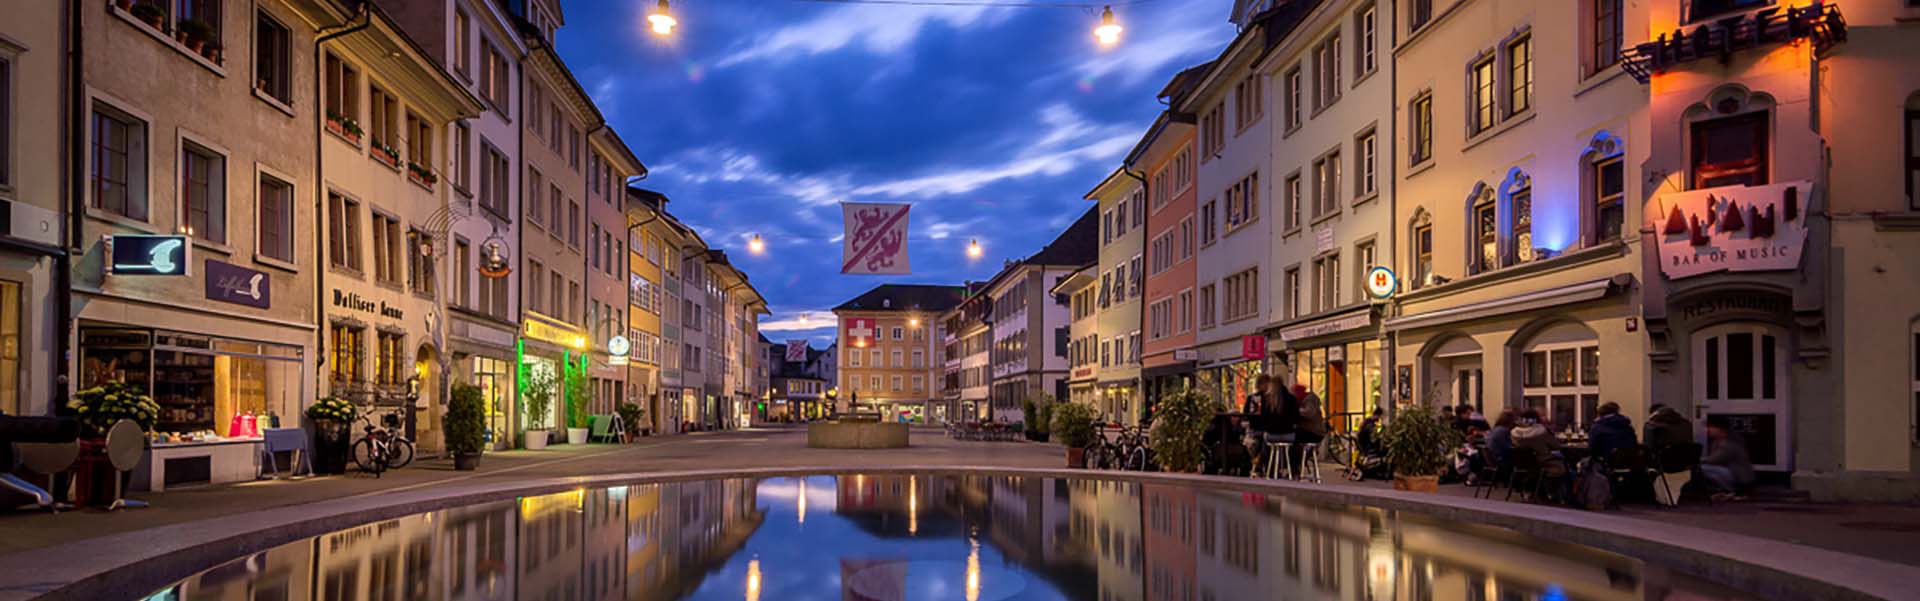 Top Escort Switzerland | Escort Seen